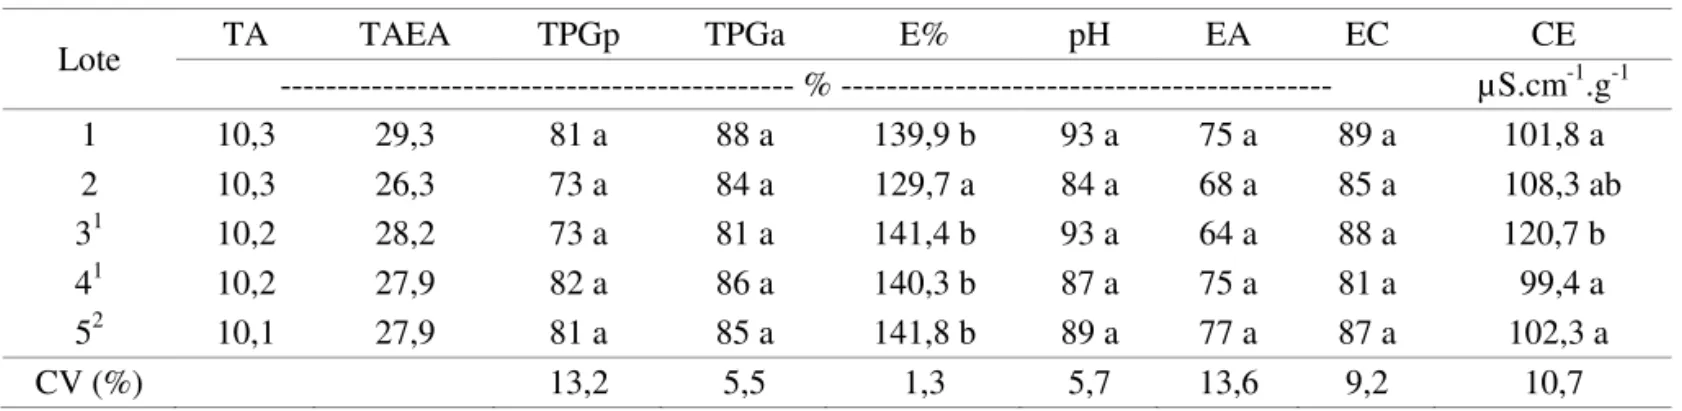 TABELA 6. Valores de teor de água inicial (TA) e após envelhecimento acelerado (TAEA), germinação em papel  (TPGp) e em areia (TPGa), embebição em água (%E), pH do exsudato (pH), envelhecimento acelerado  (EA), emergência de plântulas em campo (EC) e condu